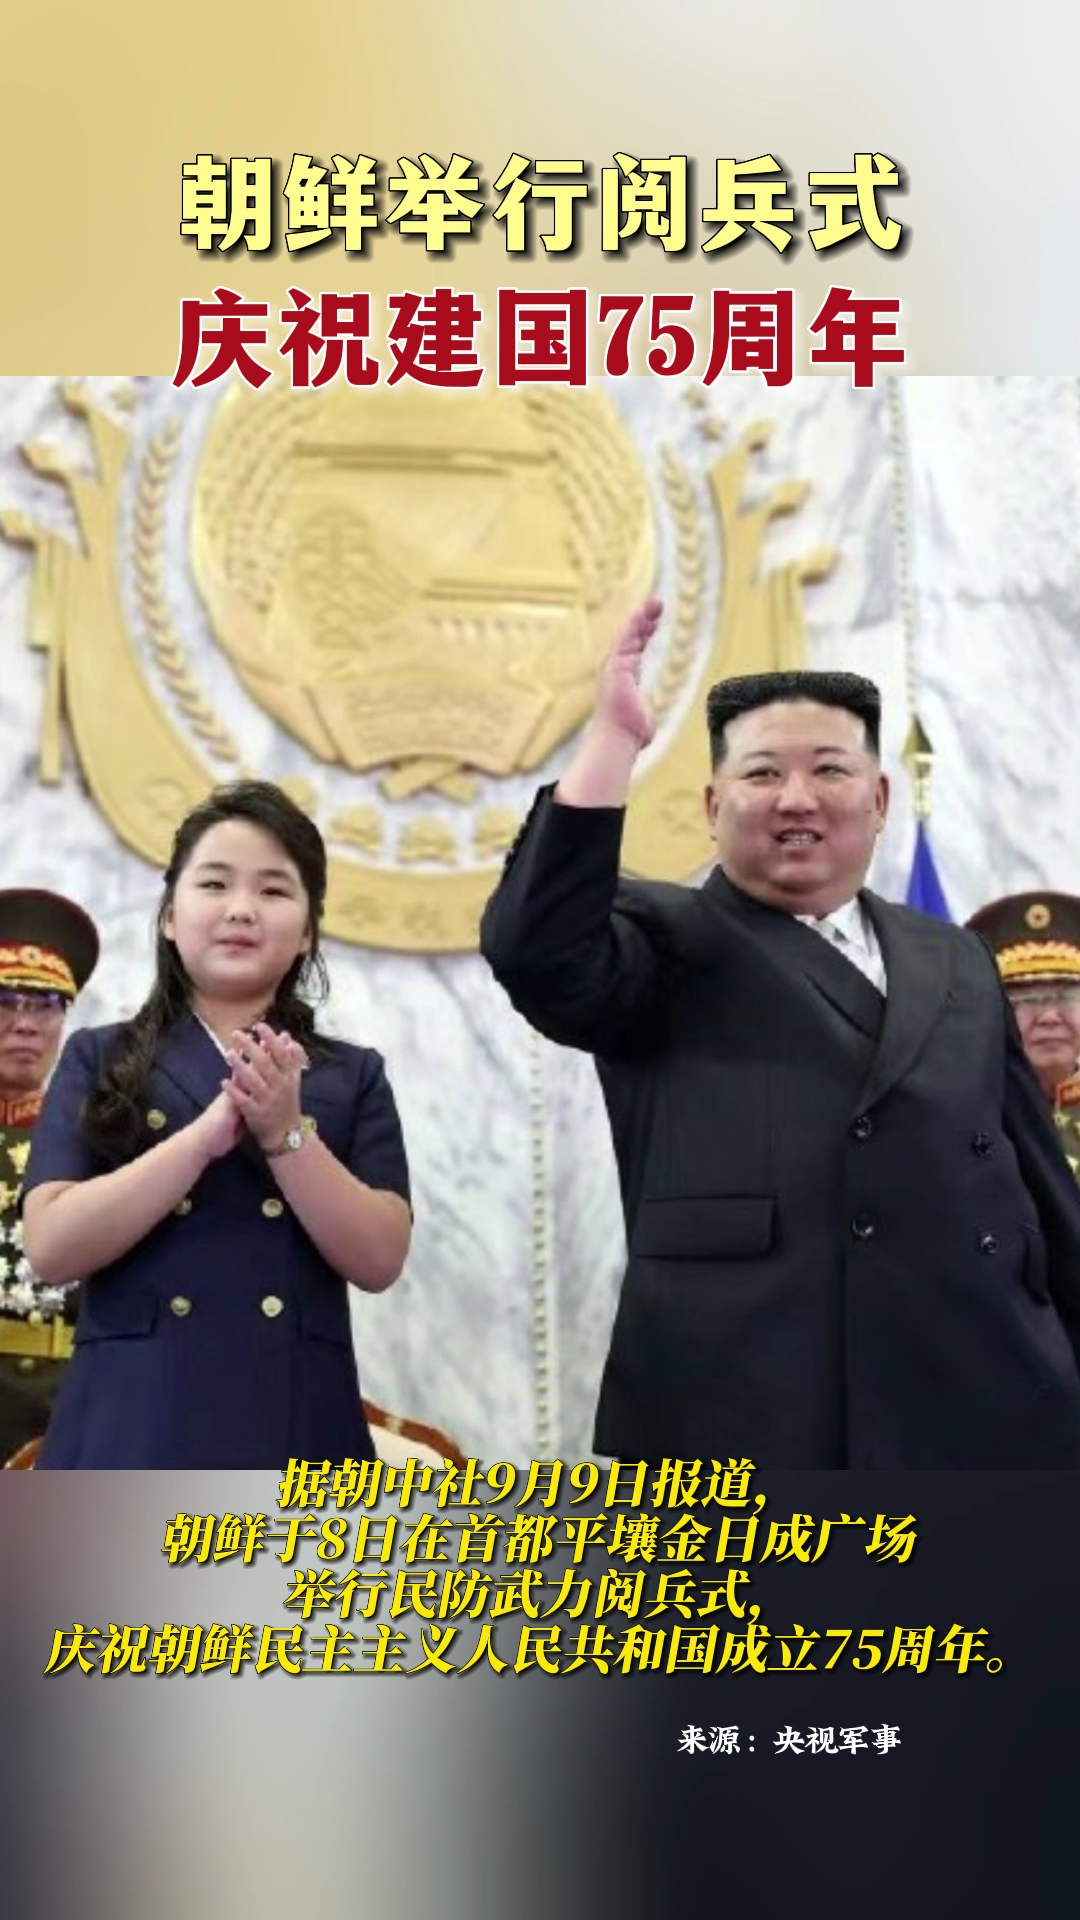 朝鲜举行阅兵式庆祝建国75周年